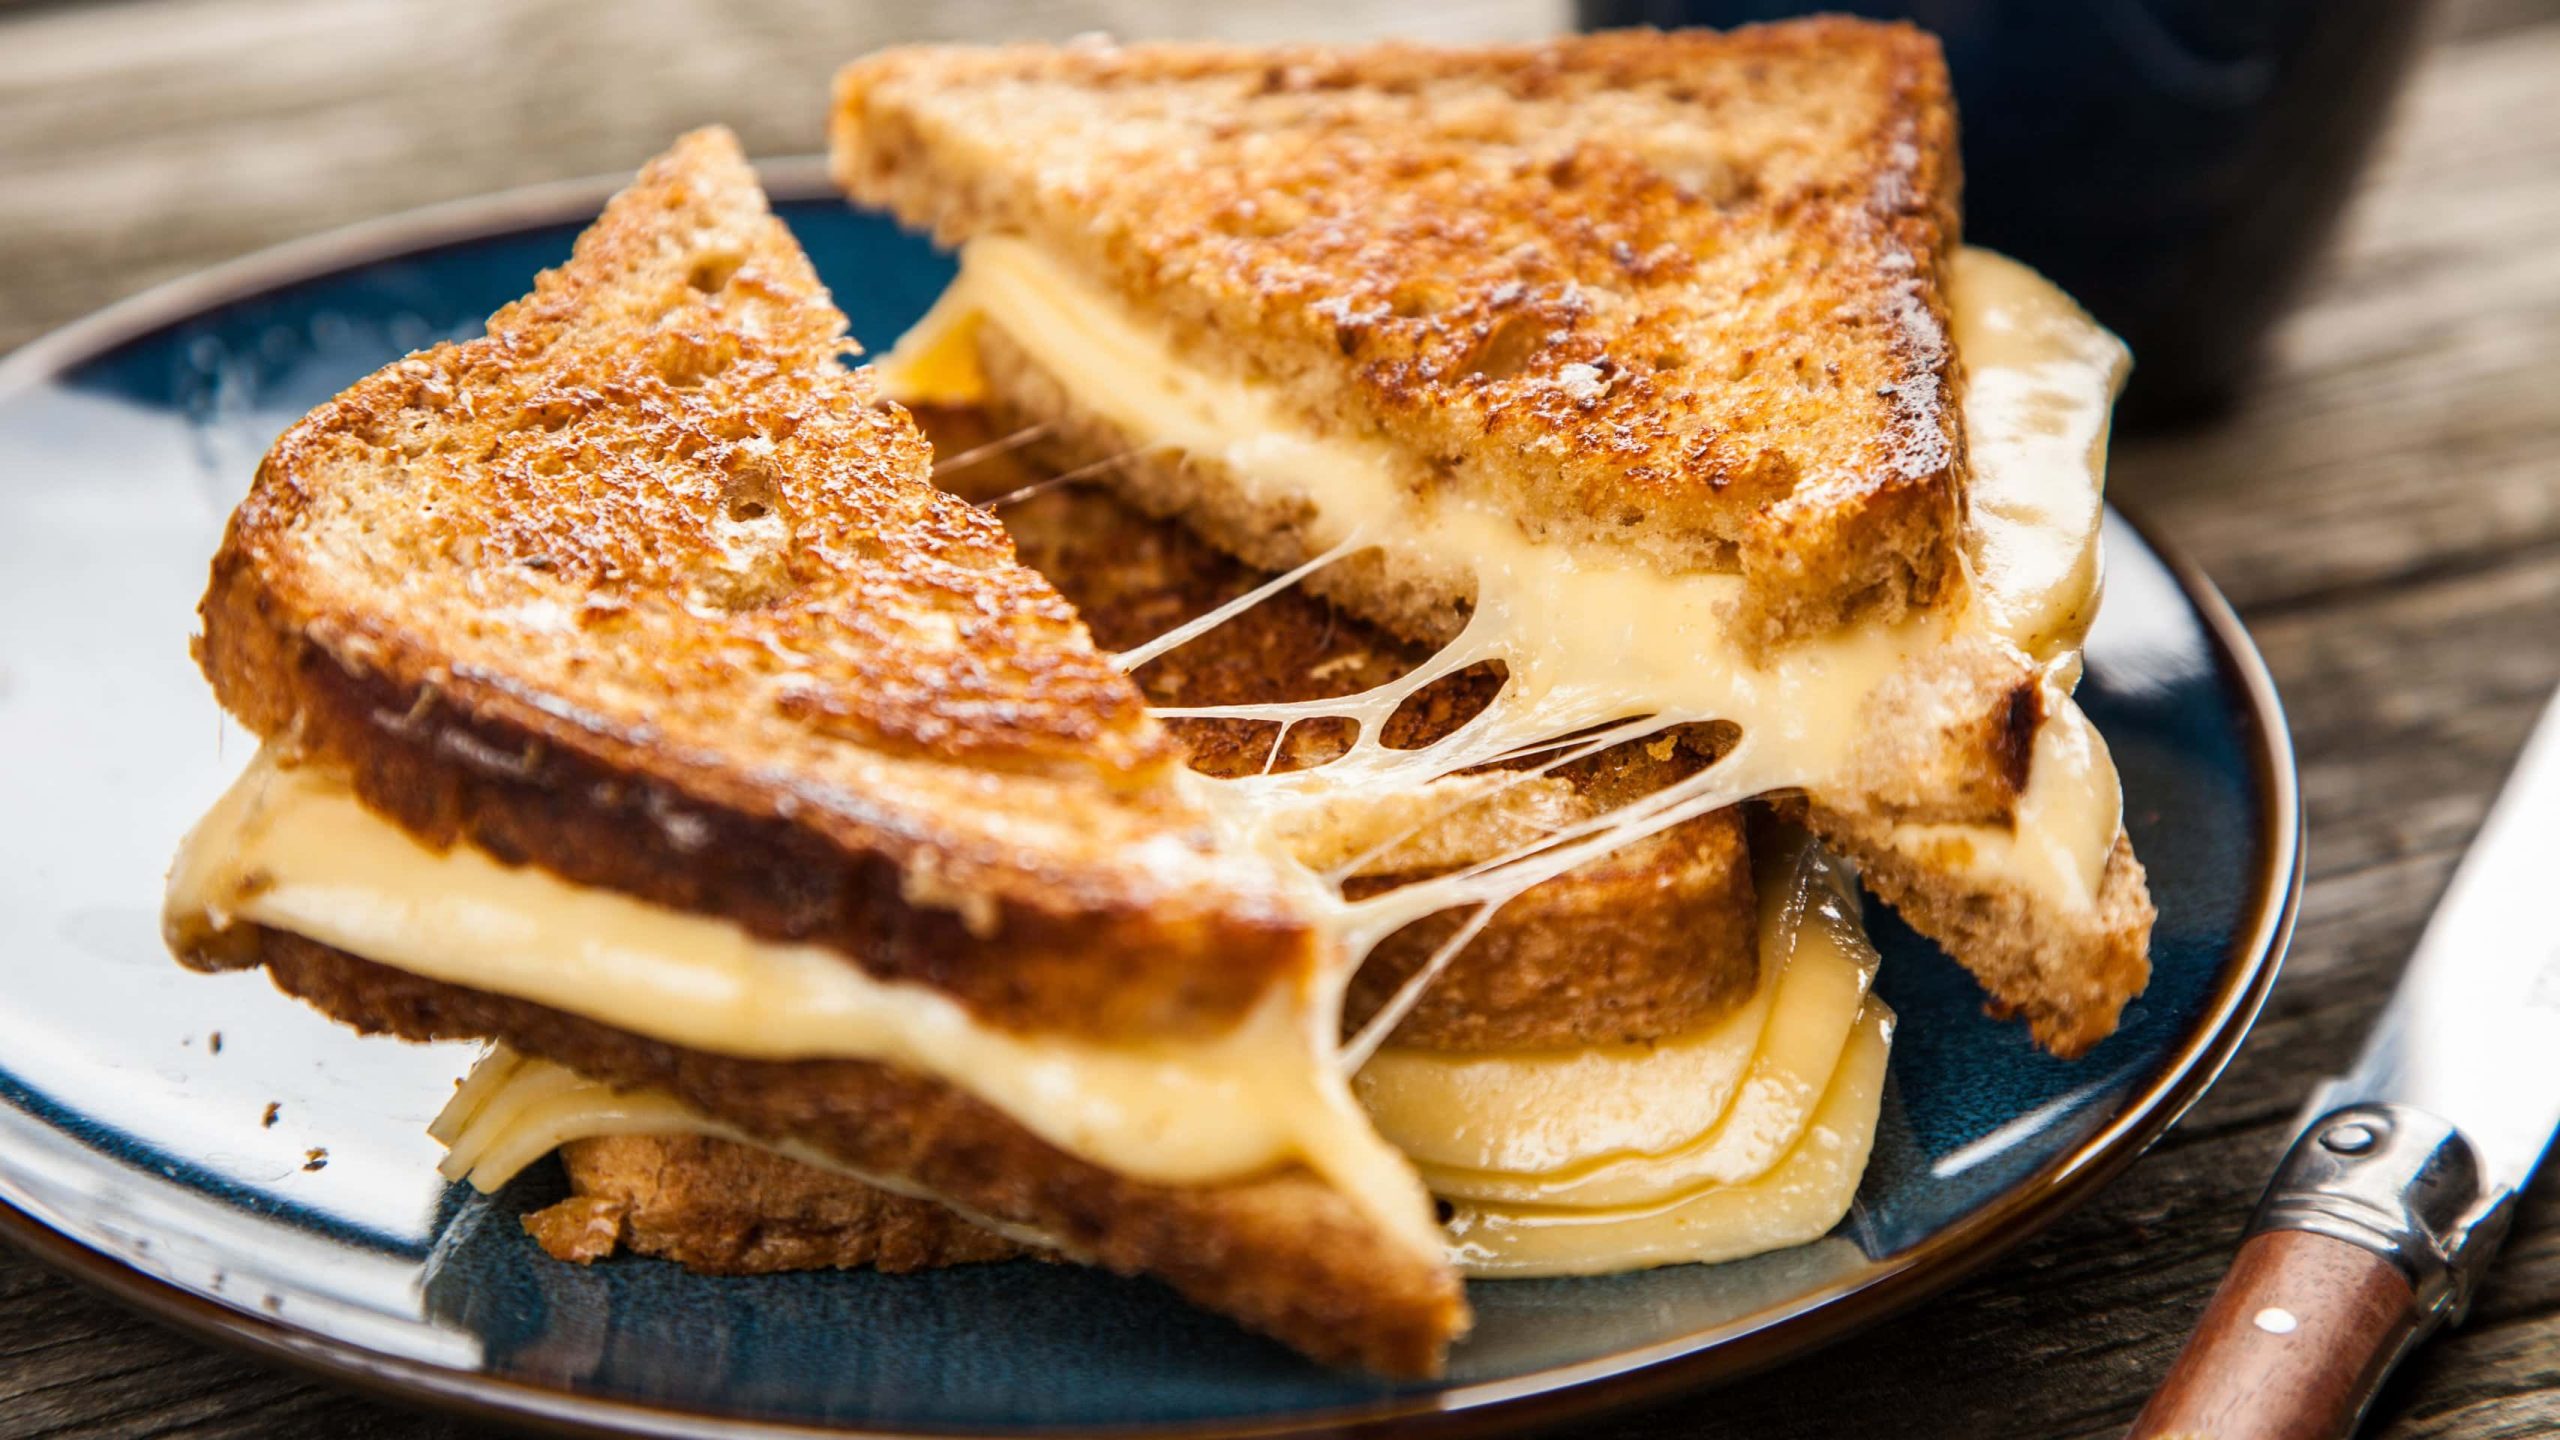 Zwei Grilled Cheese Sandwiches aus "Jane the Virgin" übereinander auf dunklem Teller auf Holztisch aus der Draufsicht. Das obere in der Mitte geteilt mit sich ziehendem geschmolzenem Käse. Rechts Messer mit Holzgriff.